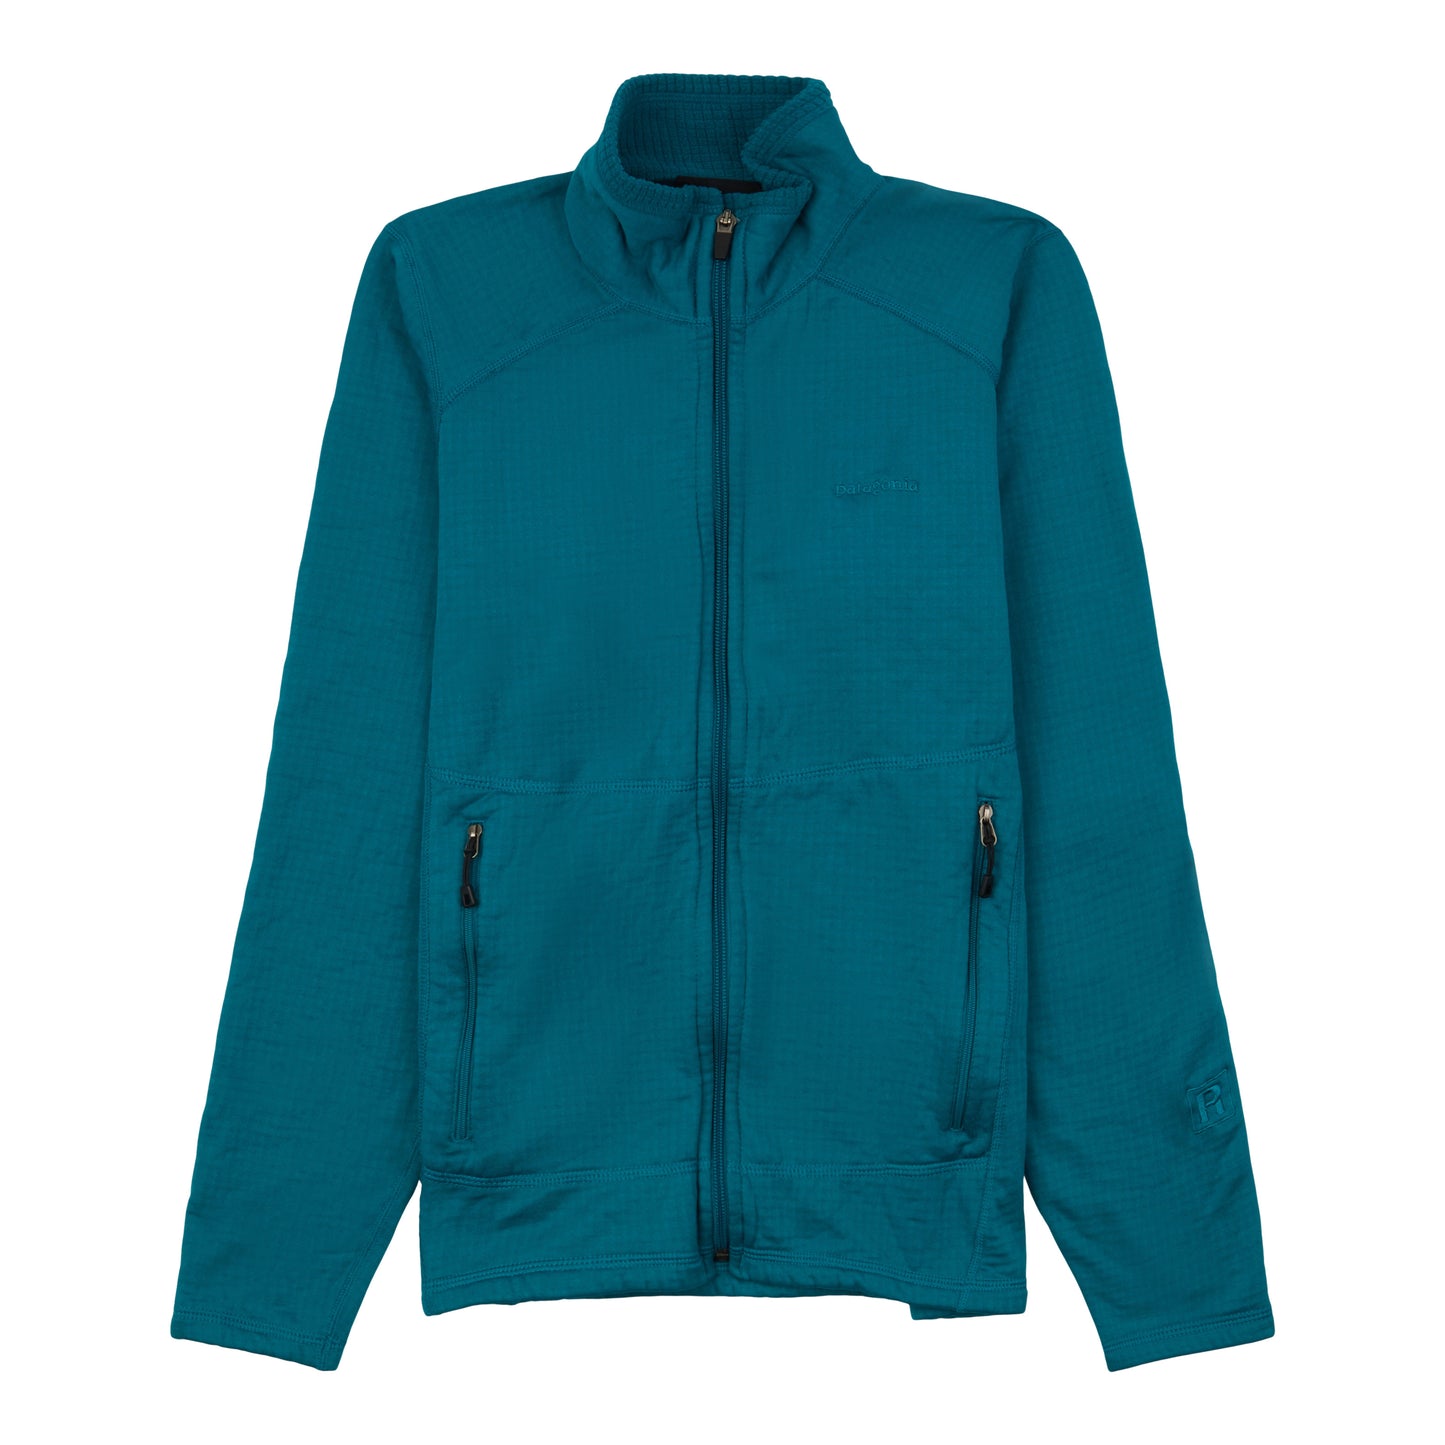 Women's R1® Full-Zip Jacket